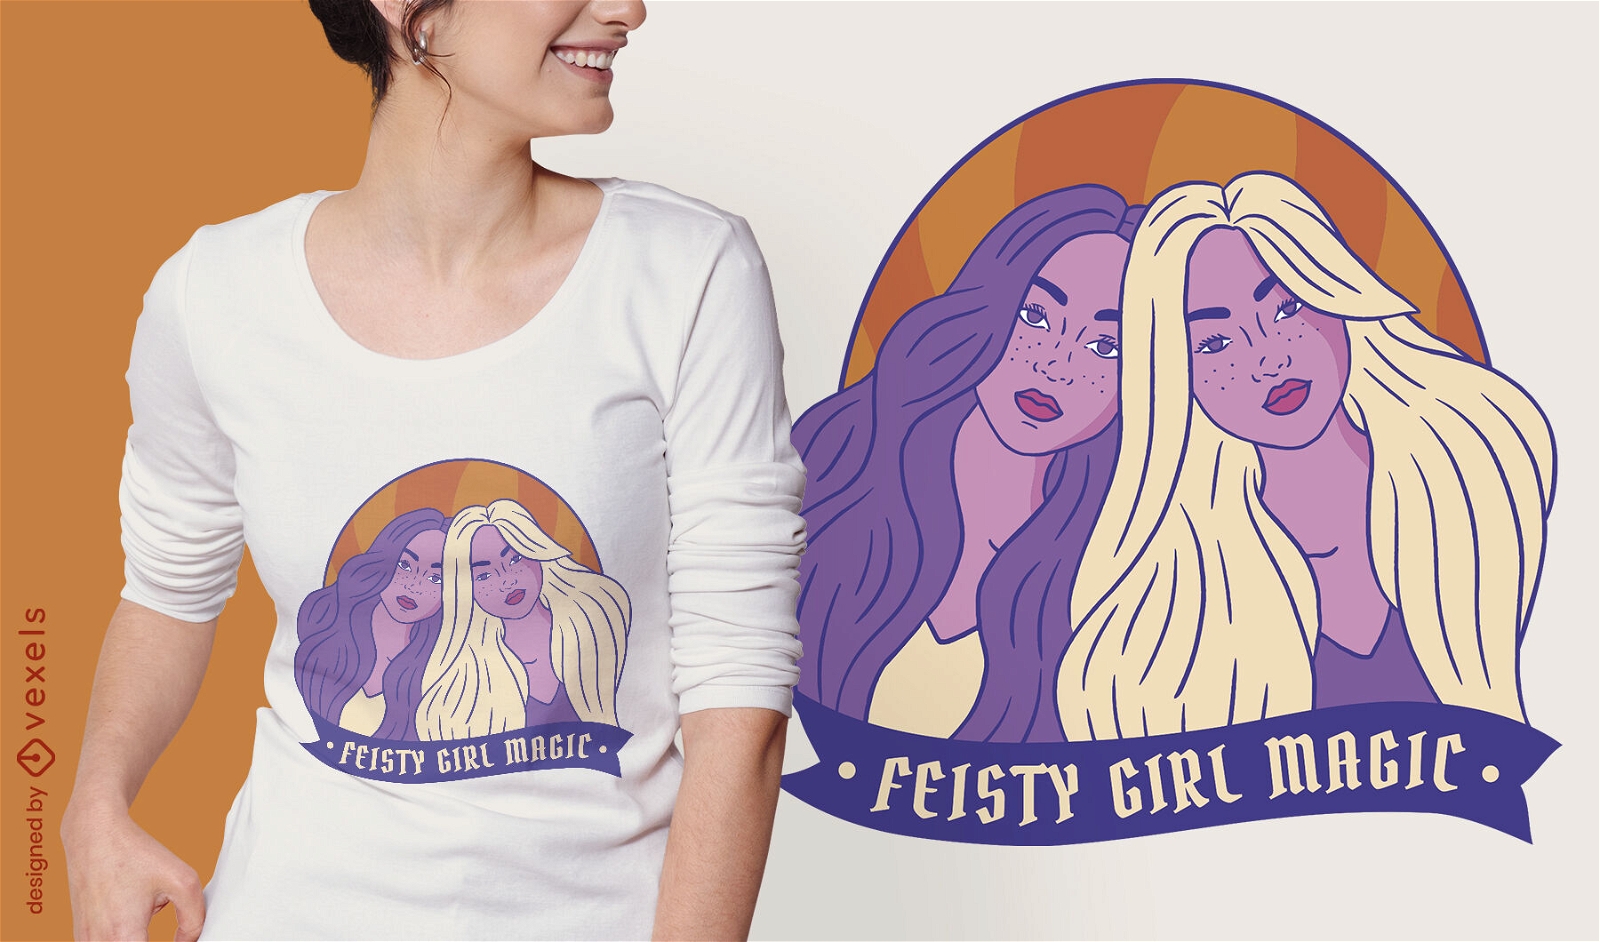 Diseño de camiseta de amigas feministas de mujeres fuertes.